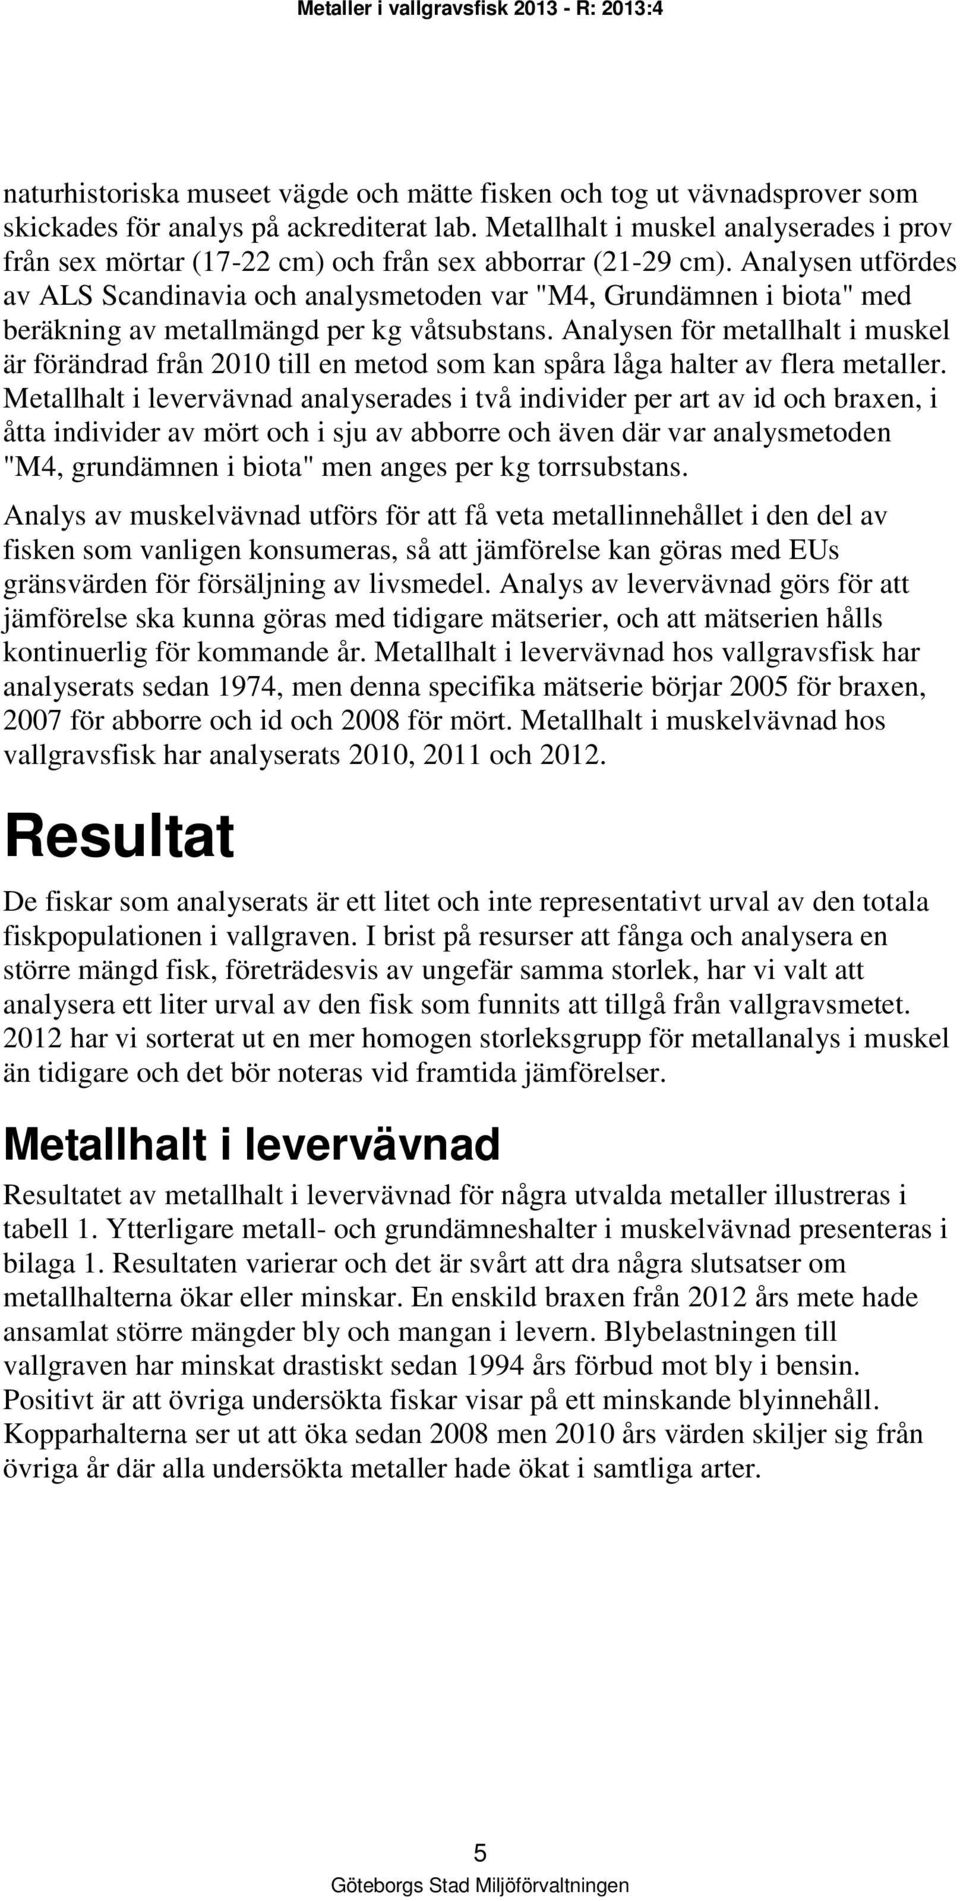 Analysen utfördes av ALS Scandinavia och analysmetoden var "M4, Grundämnen i biota" med beräkning av metallmängd per kg våtsubstans.